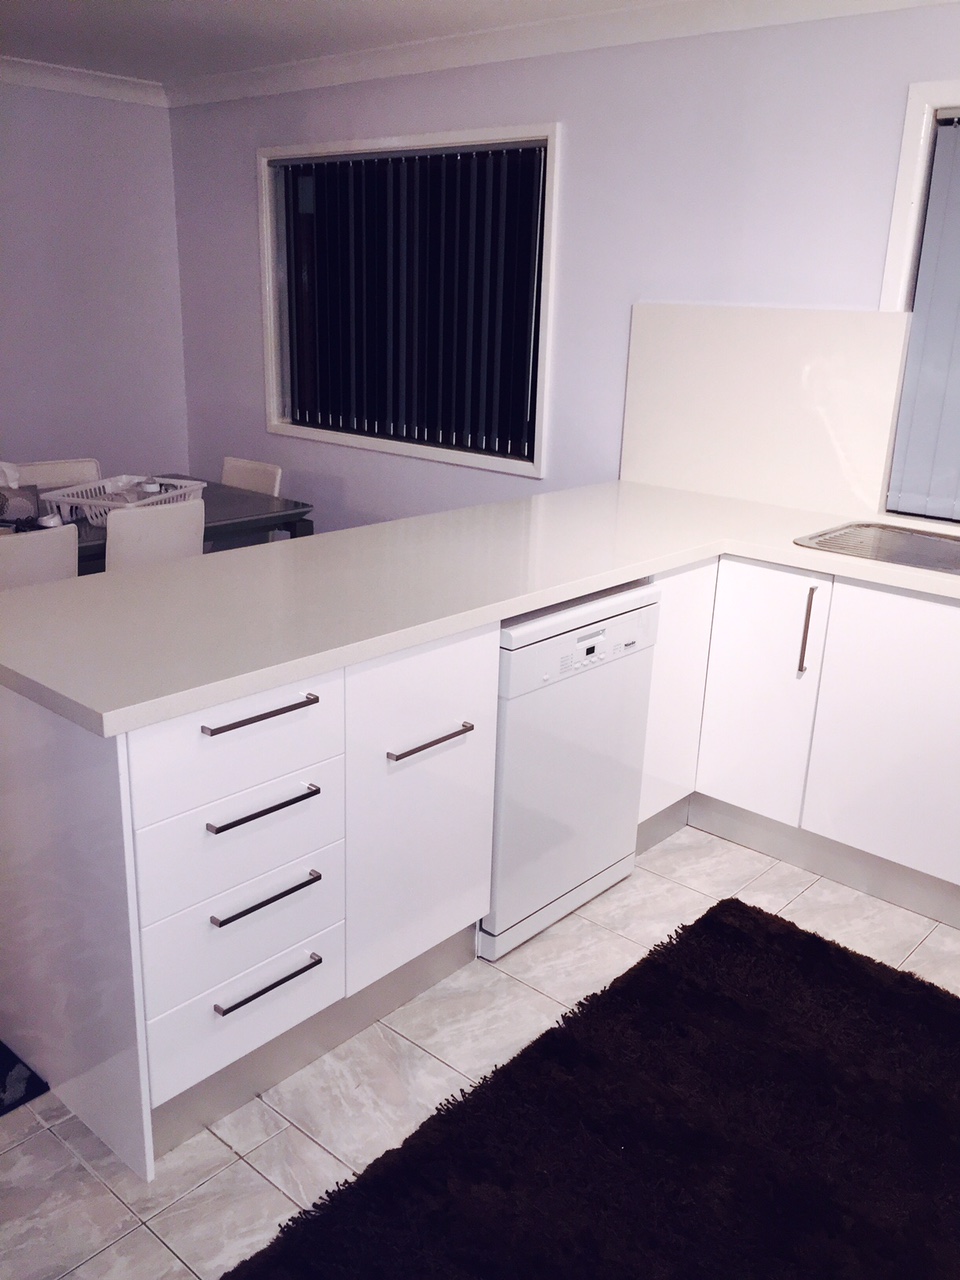 small white kitchen